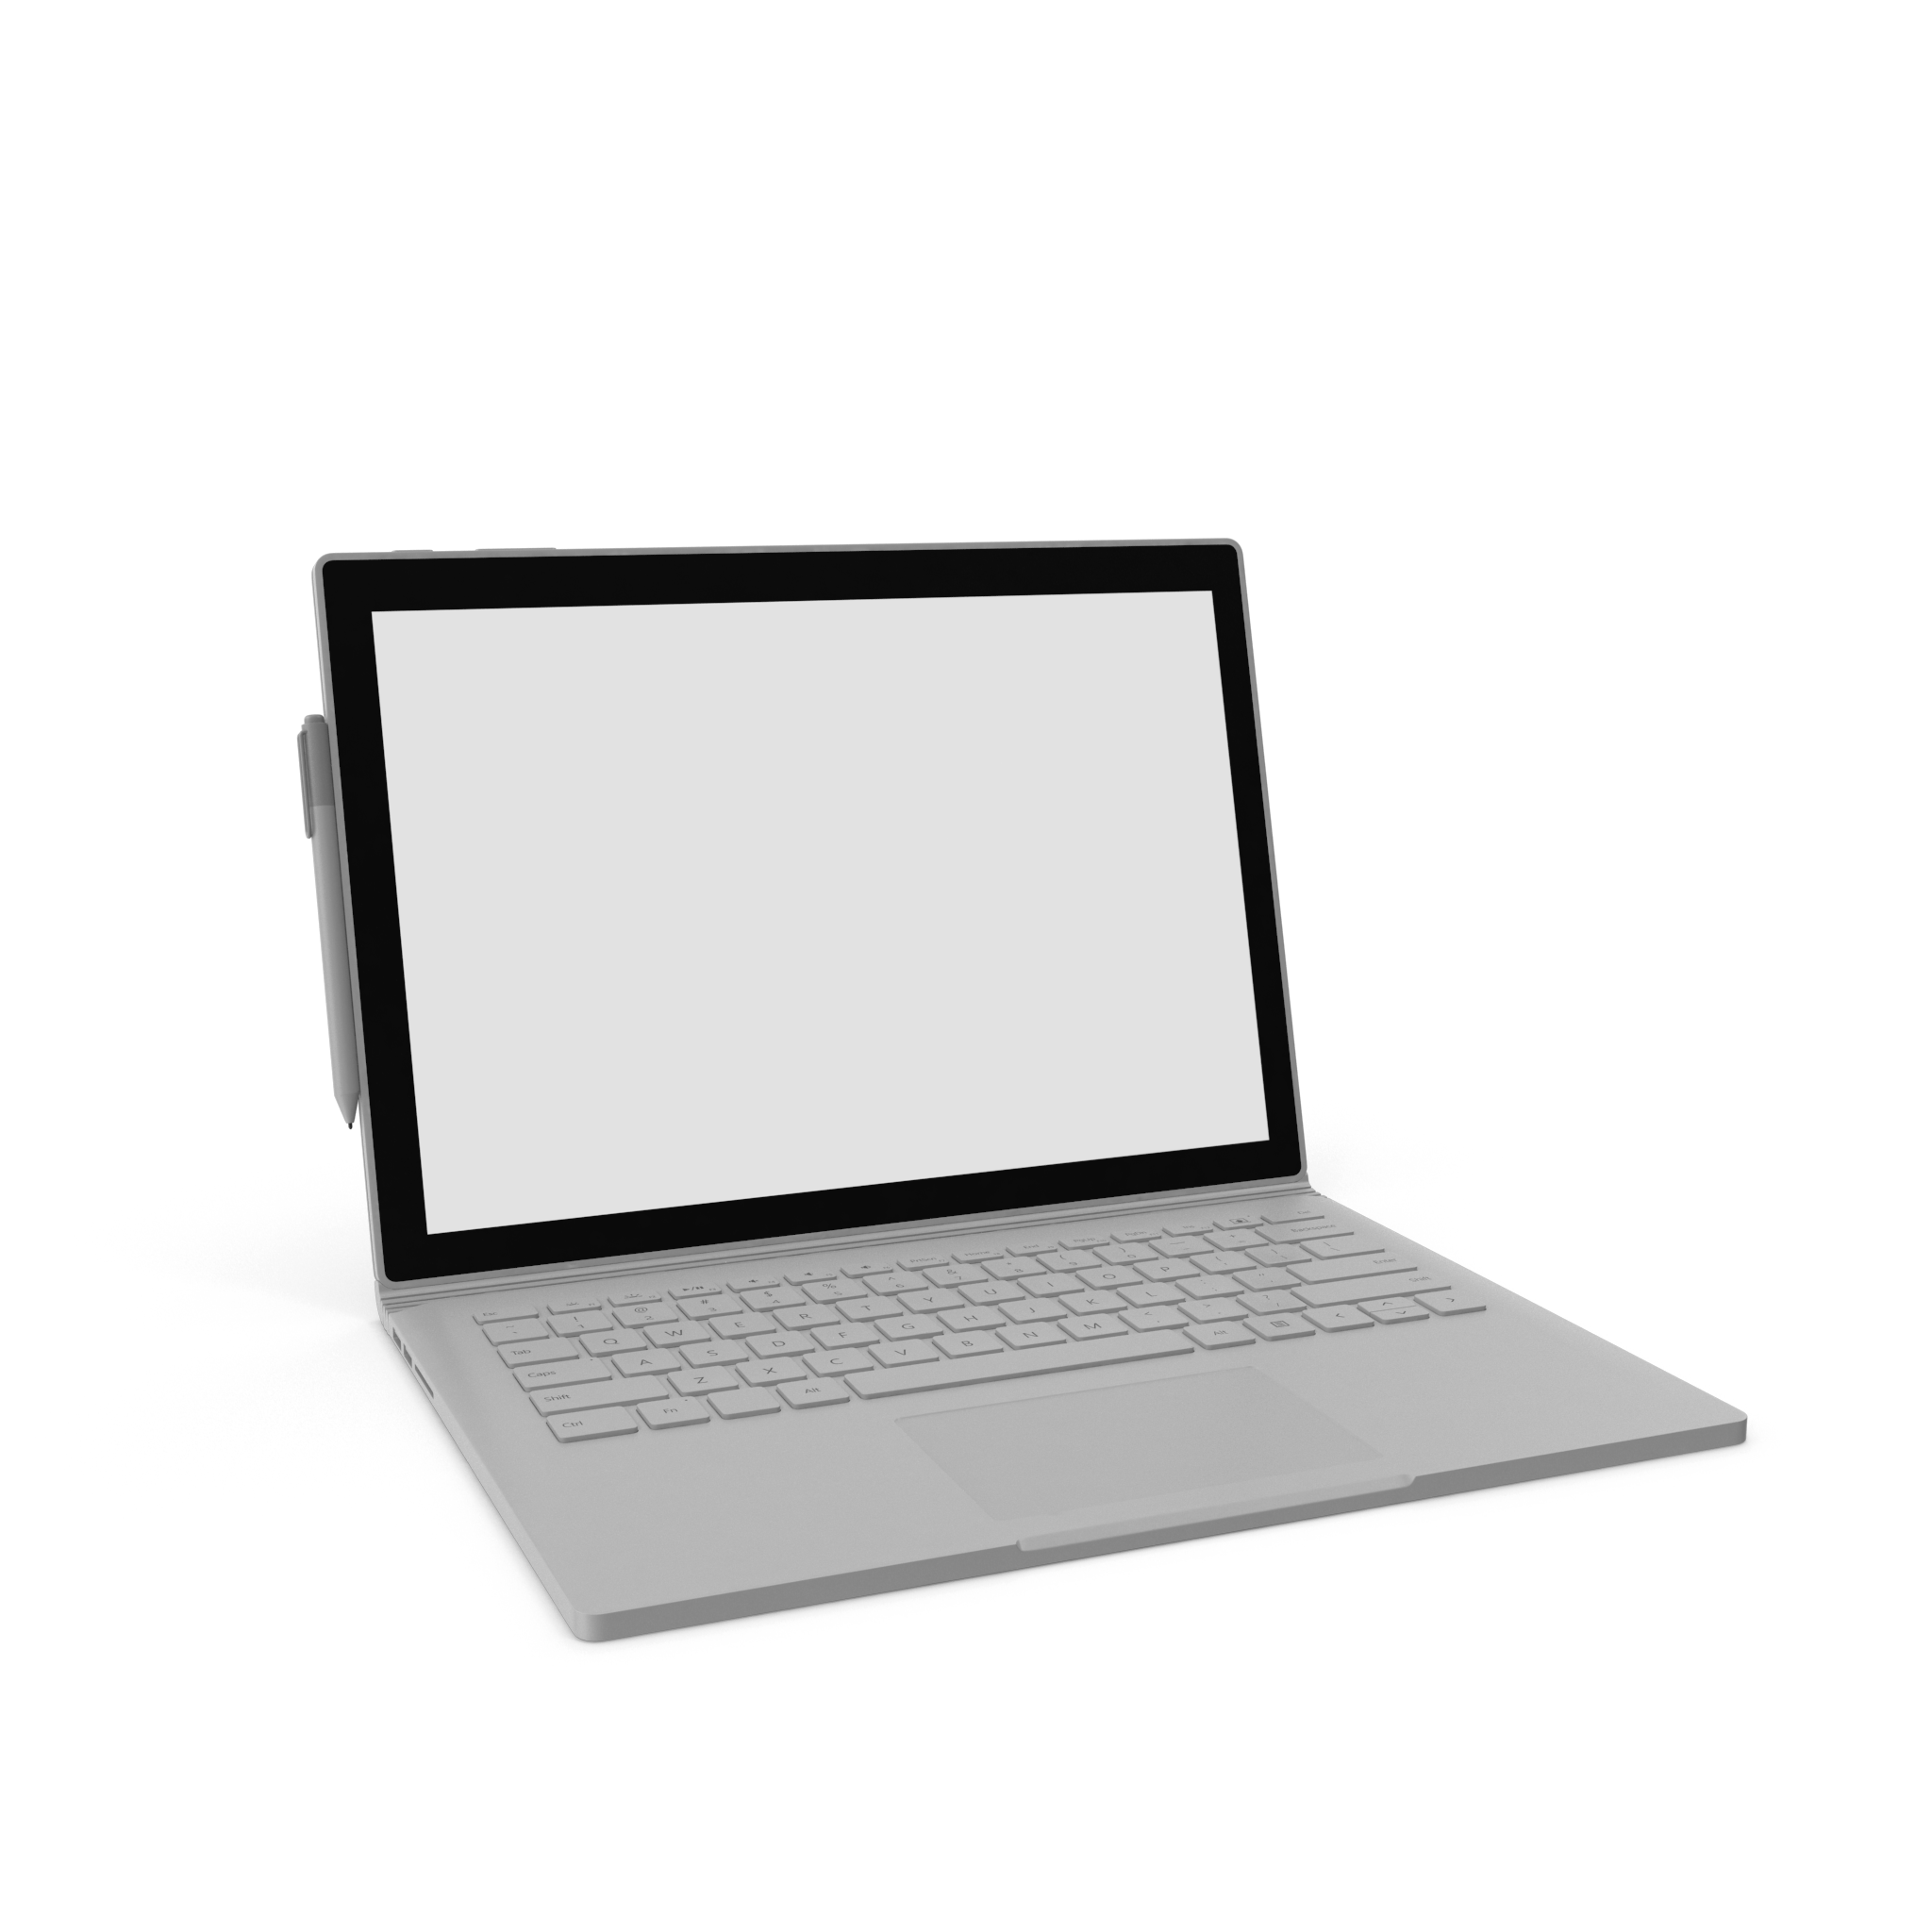 Laptop Tablet Computer.H16.2k